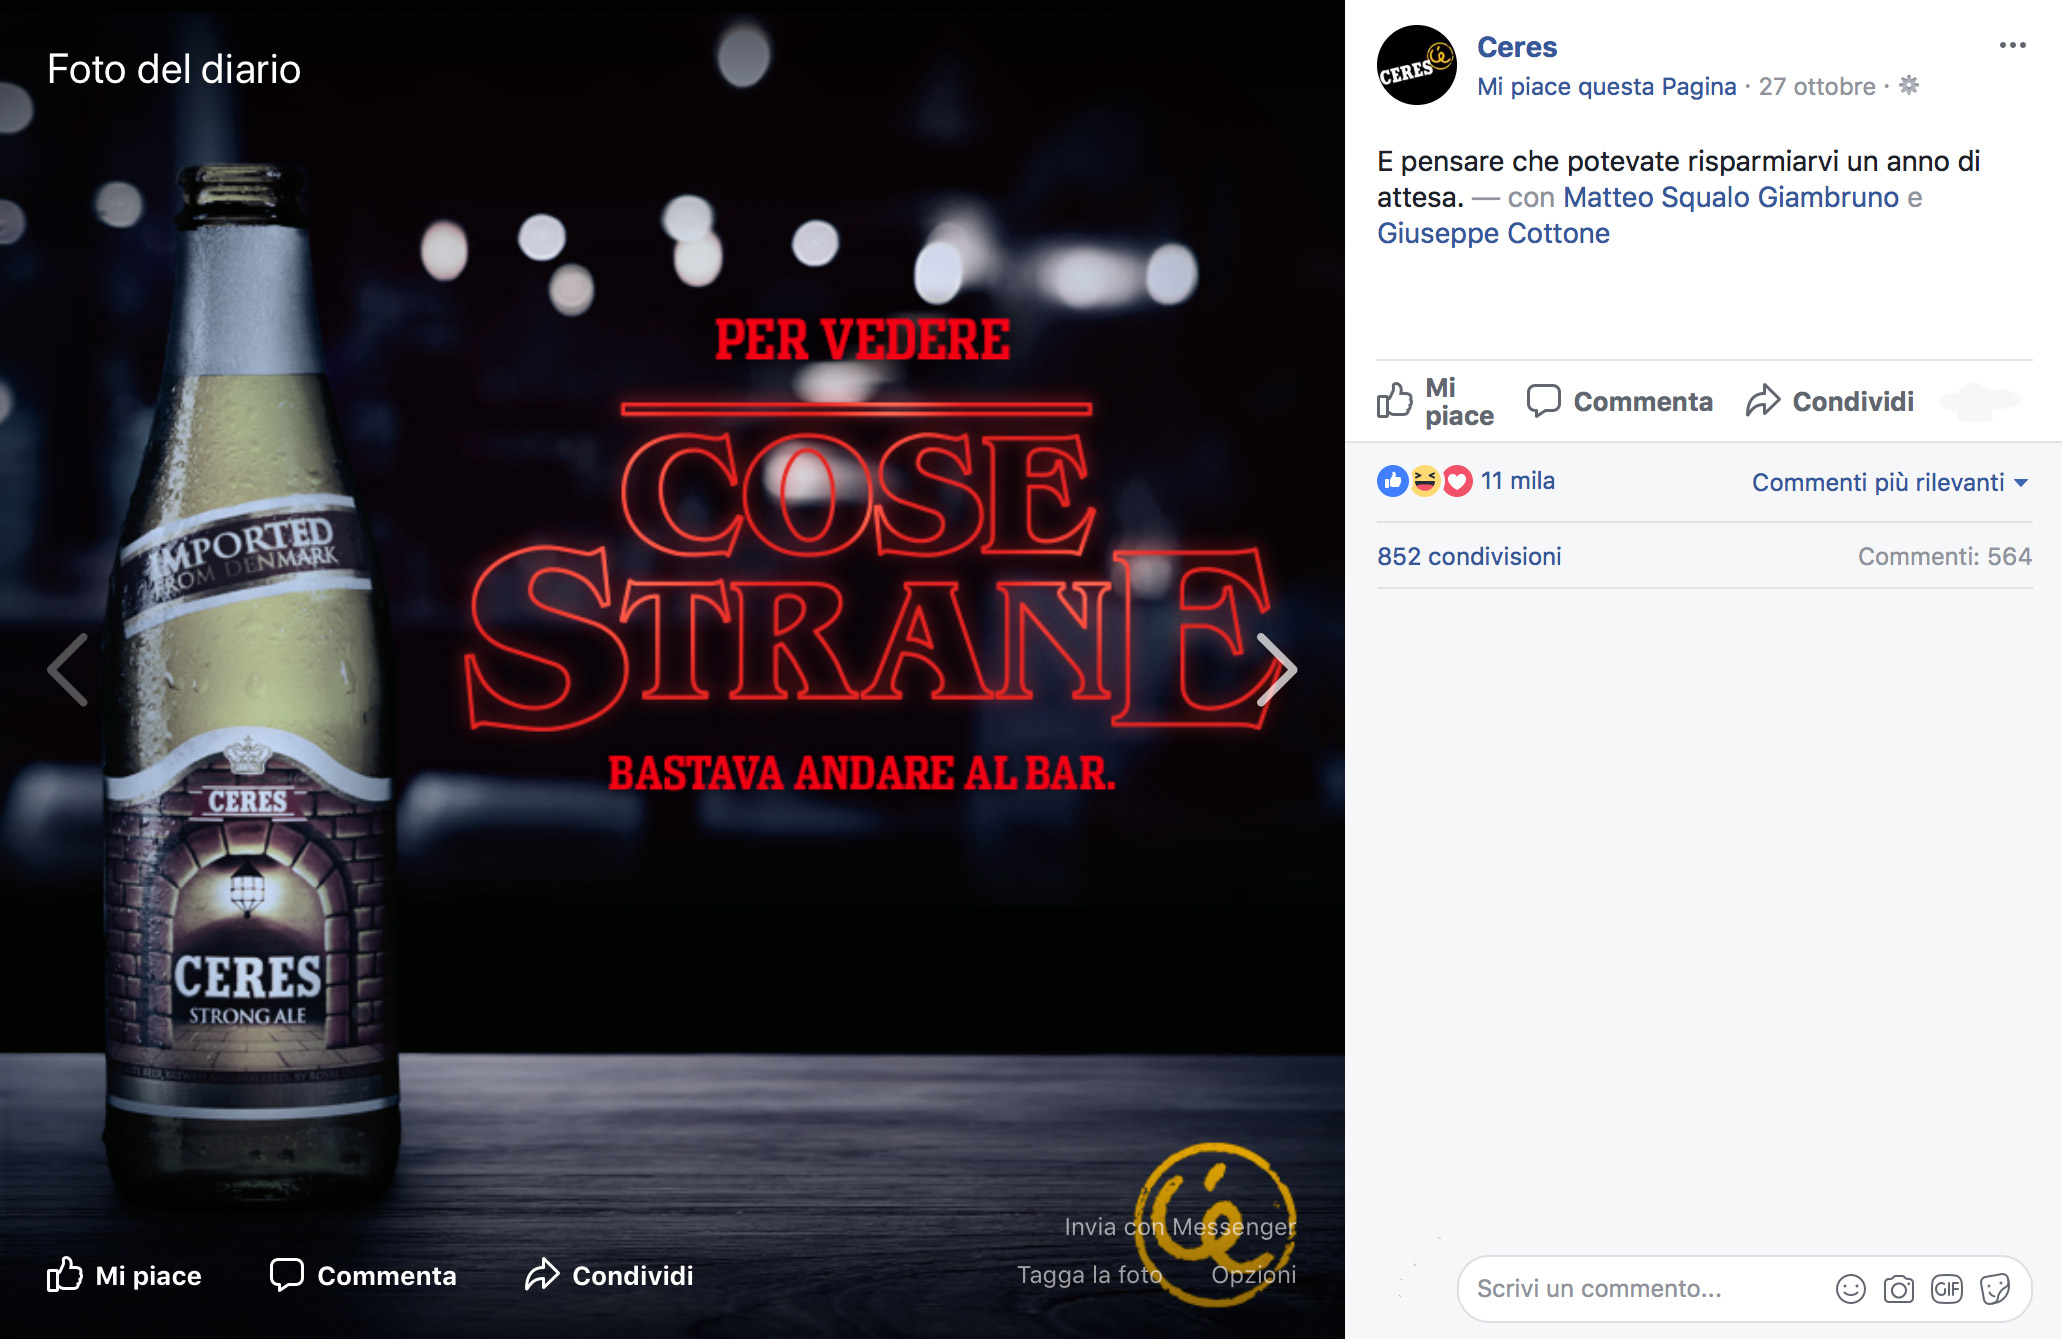 social network - Post della Ceres in occasione del lancio di Stranger Things 2